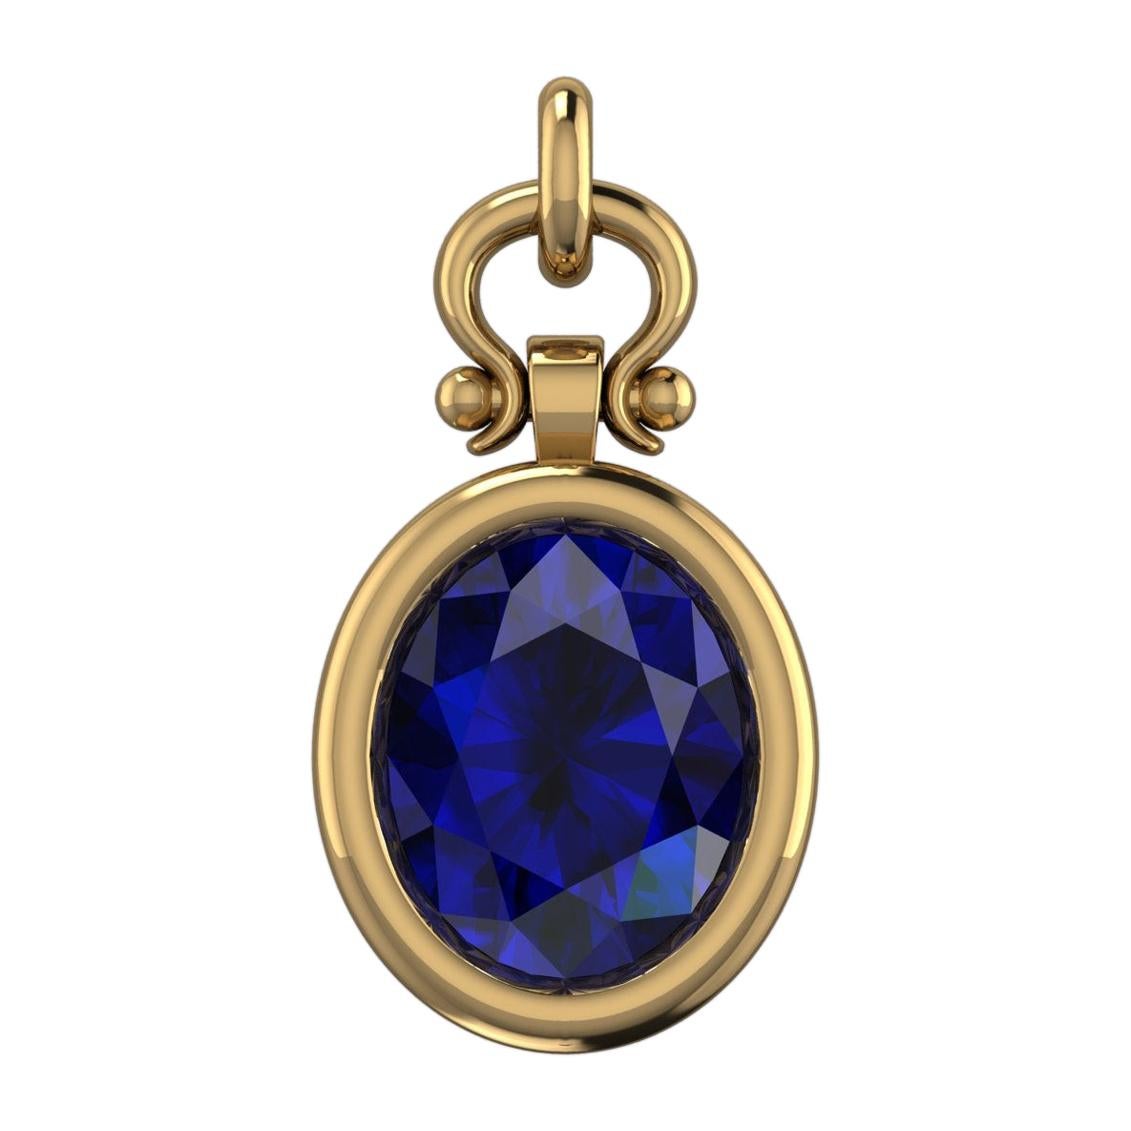 Berberyn Certified 3.04 Carat Oval Blue Sapphire Custom Pendant Necklace in 18k